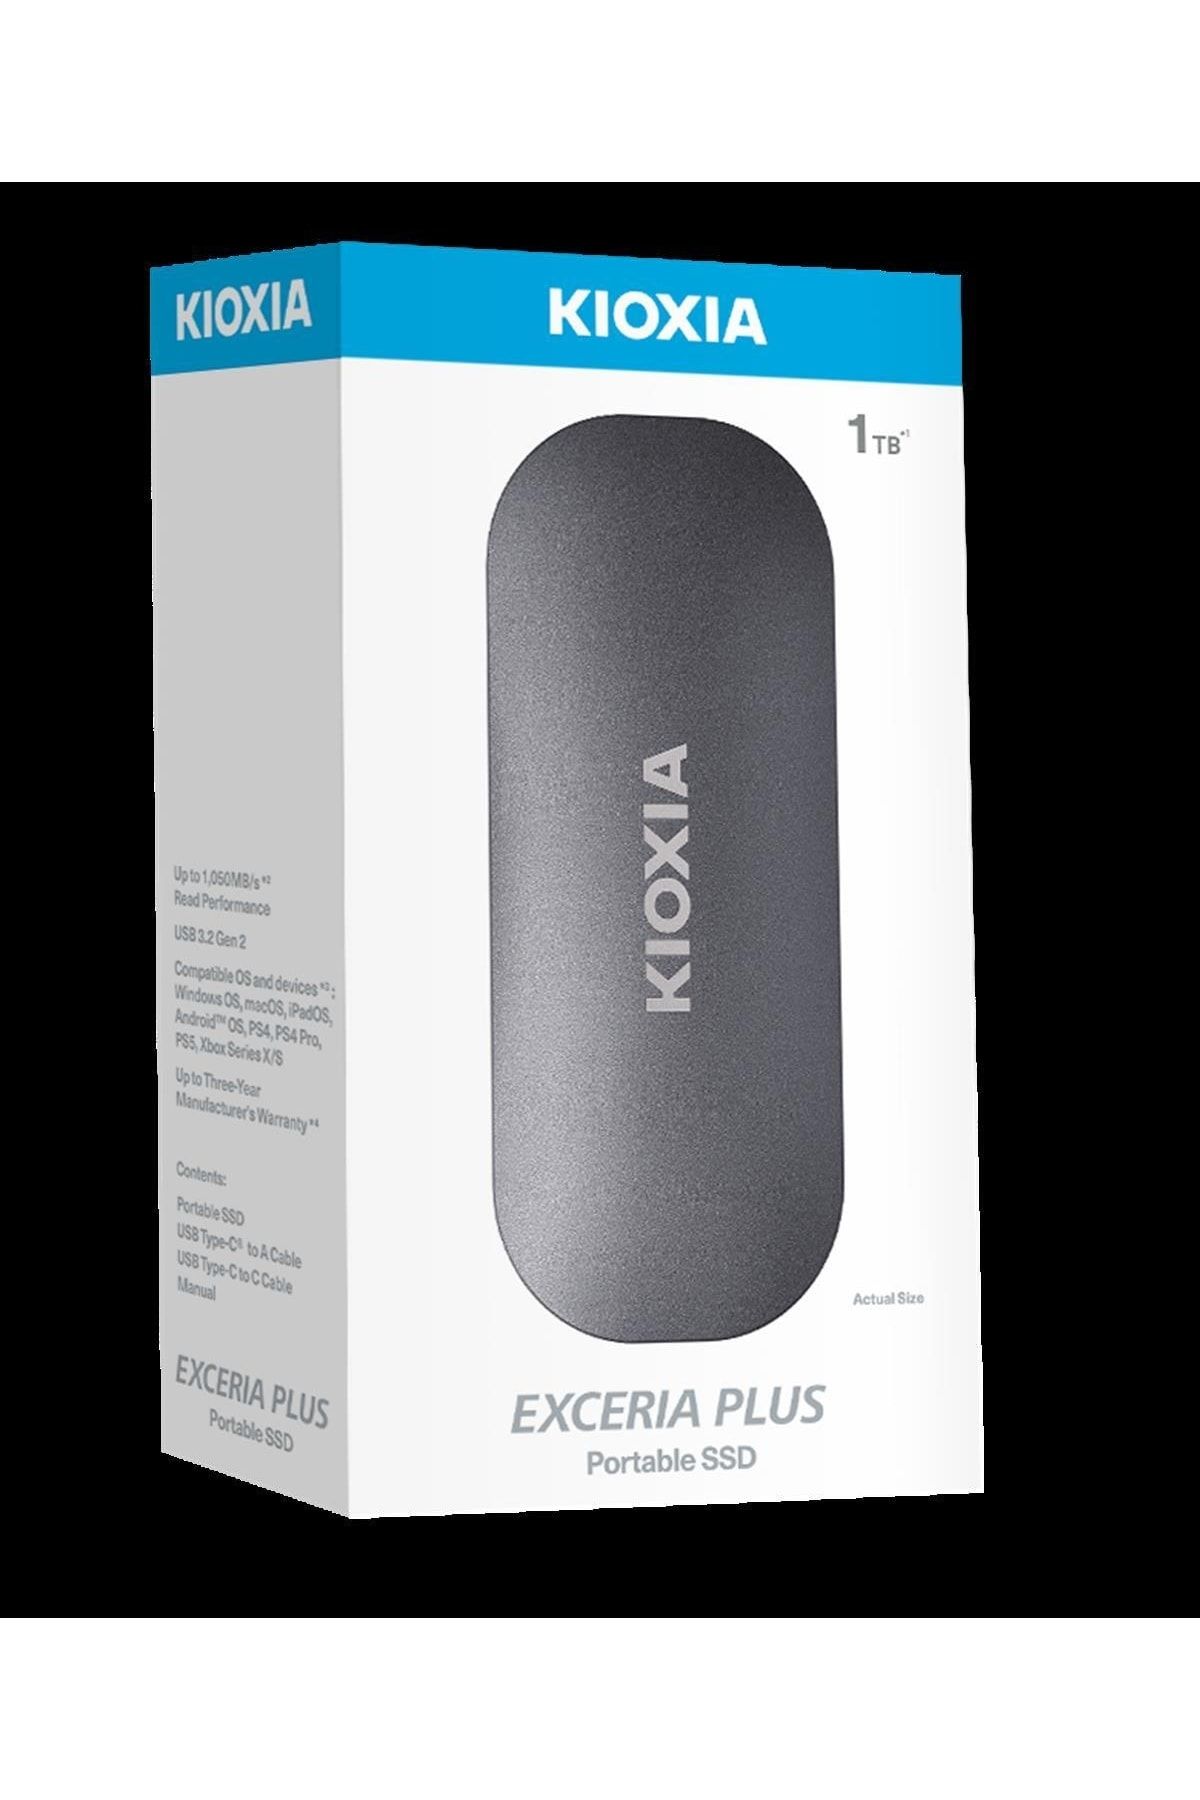 Kioxia 1TB KIOXIA EXCERIA PLUS G2 USB 3.2 1050/1000 MB/s LXD10S001TG8